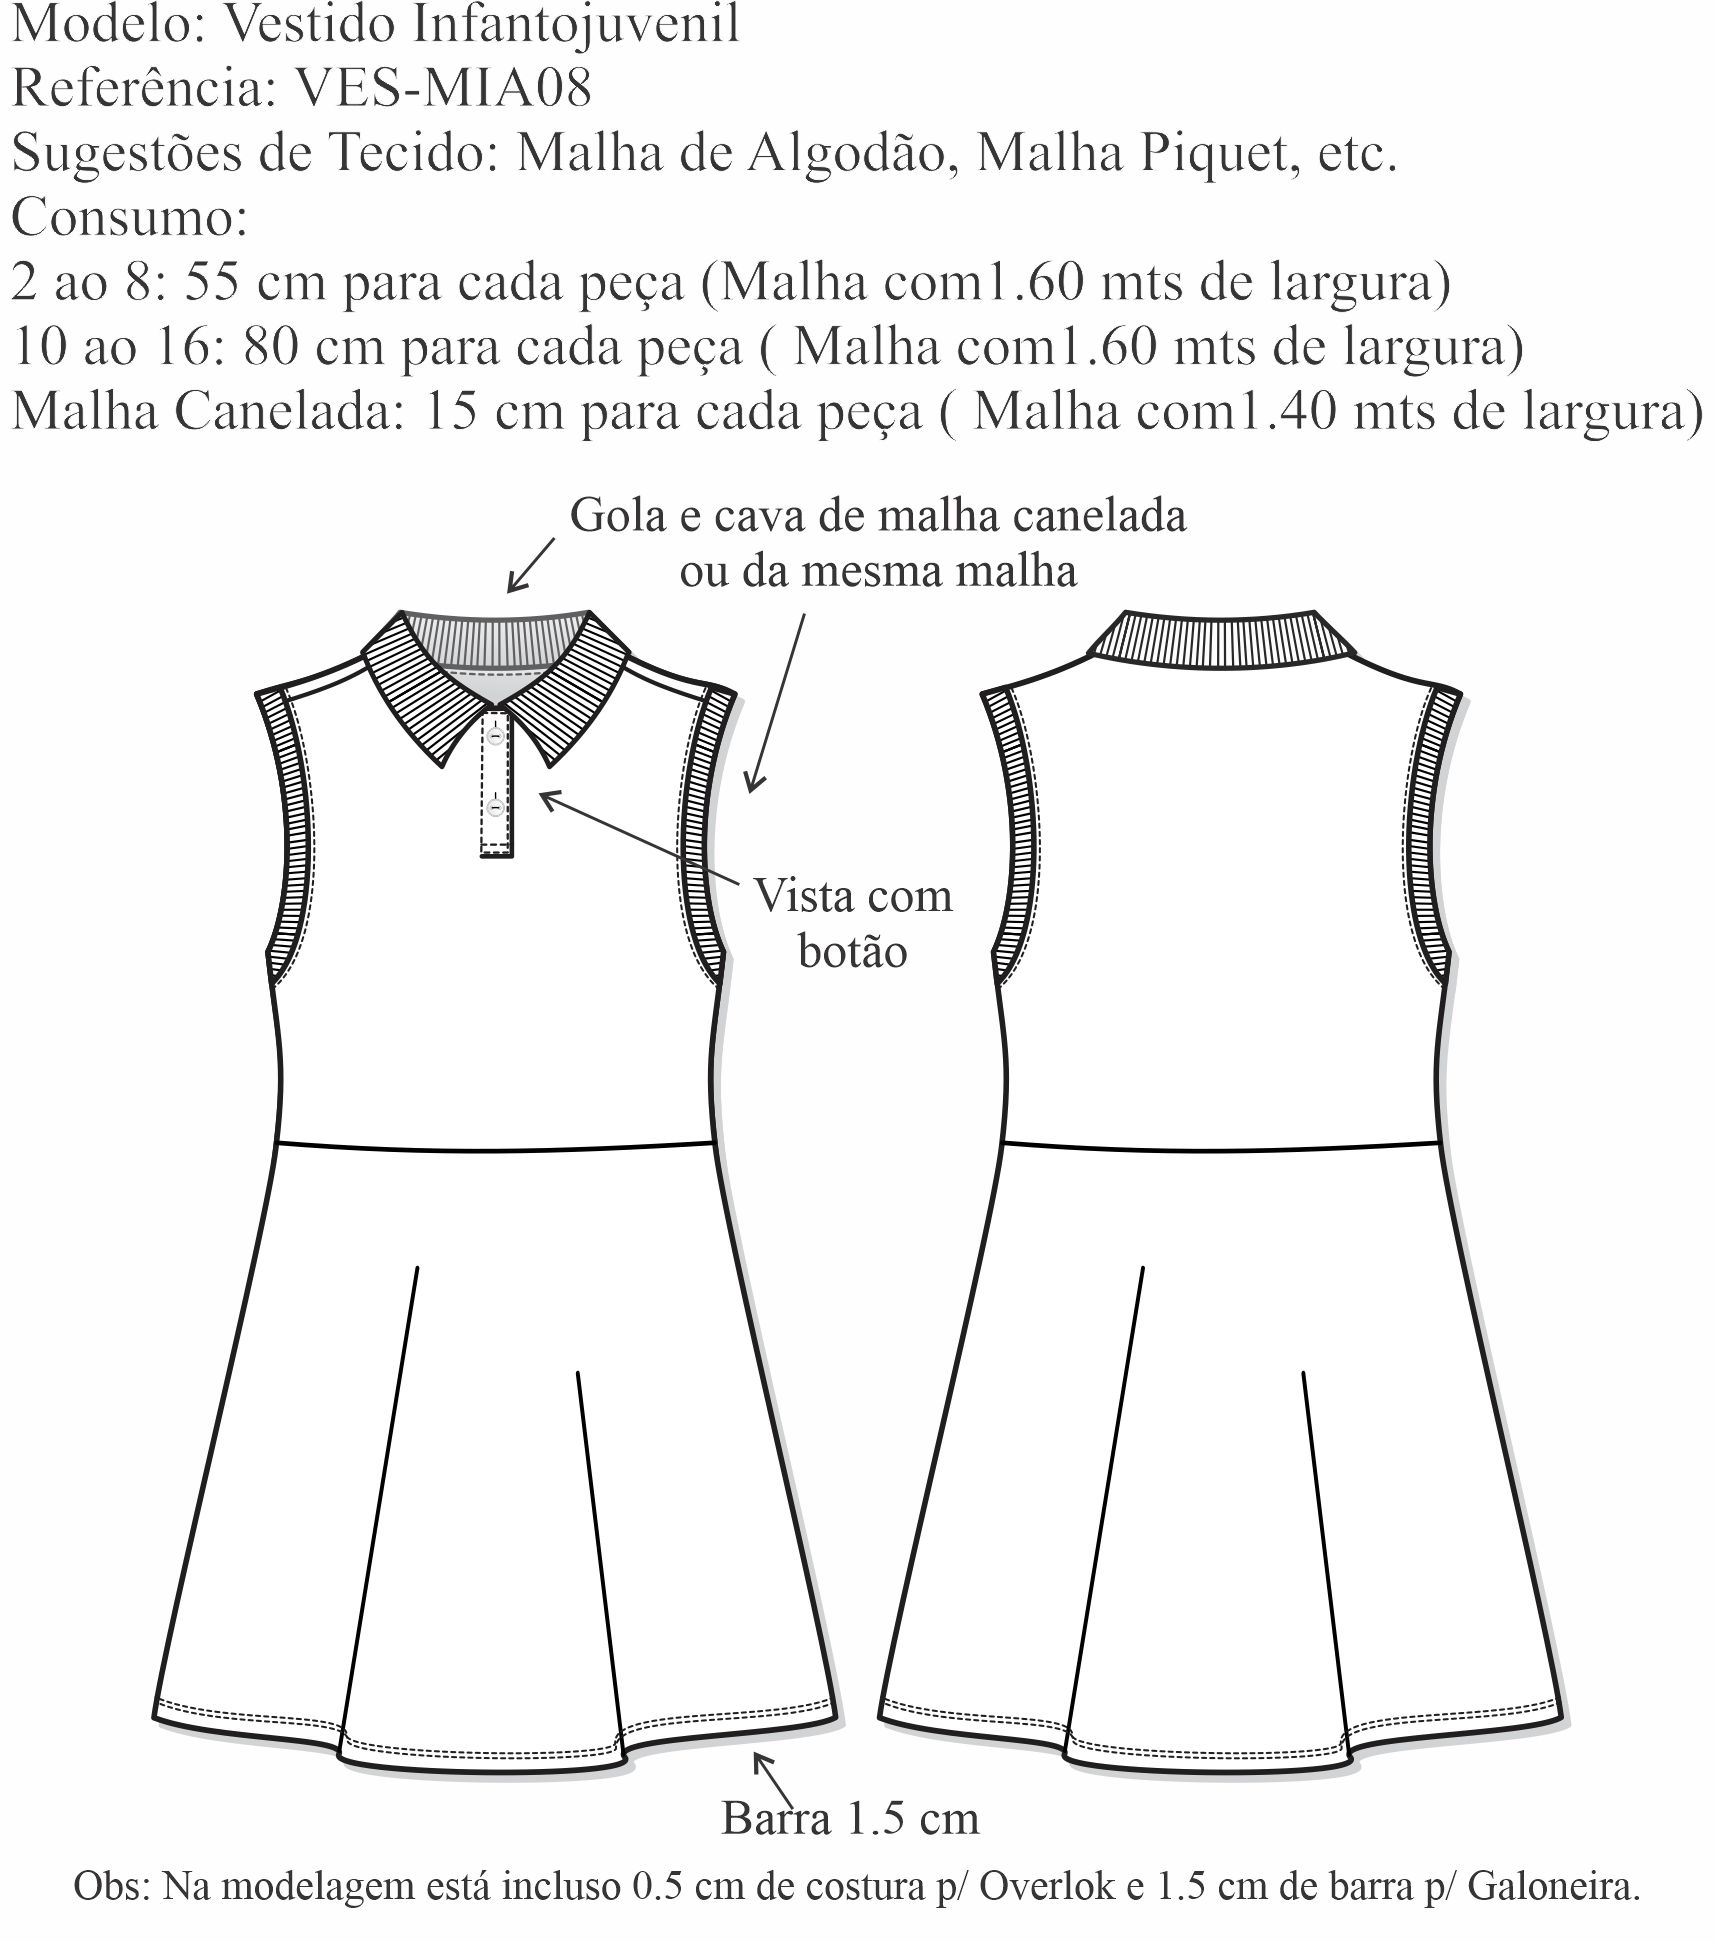 Vestido Infantojuvenil (VES-MIA08) - Foto 1